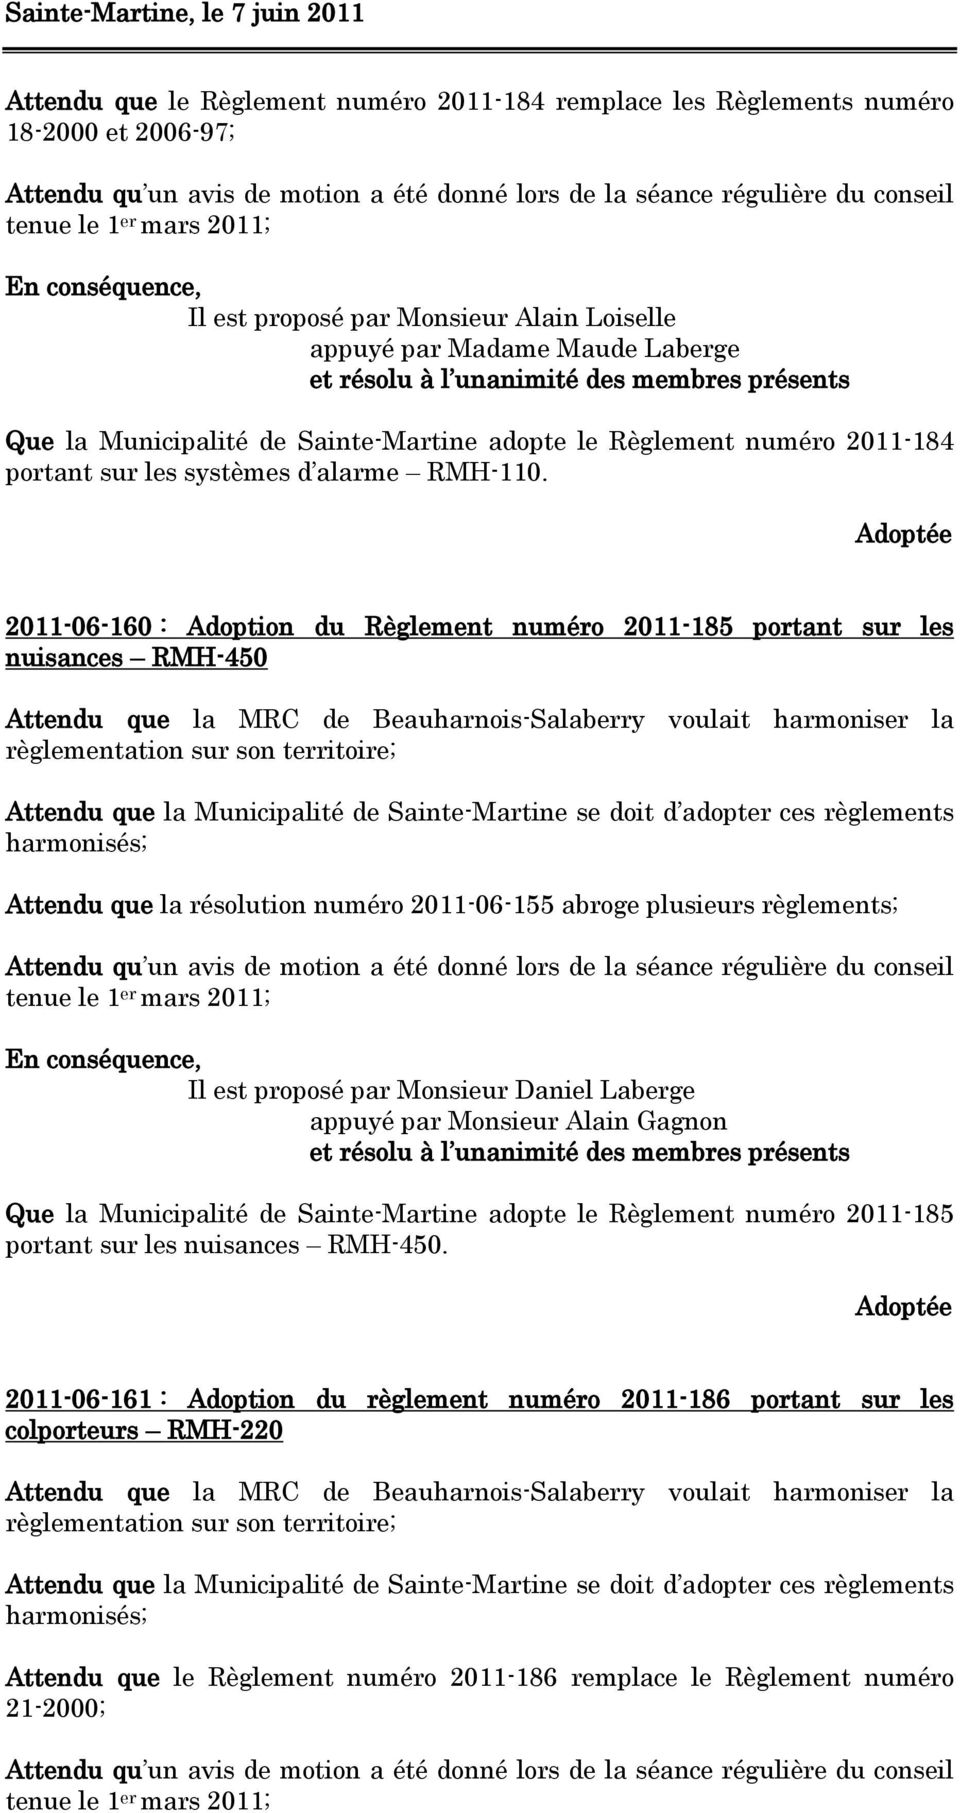 2011-06-160 : Adoption du Règlement numéro 2011-185 portant sur les nuisances RMH-450 Attendu que la MRC de Beauharnois-Salaberry voulait harmoniser la règlementation sur son territoire; Attendu que